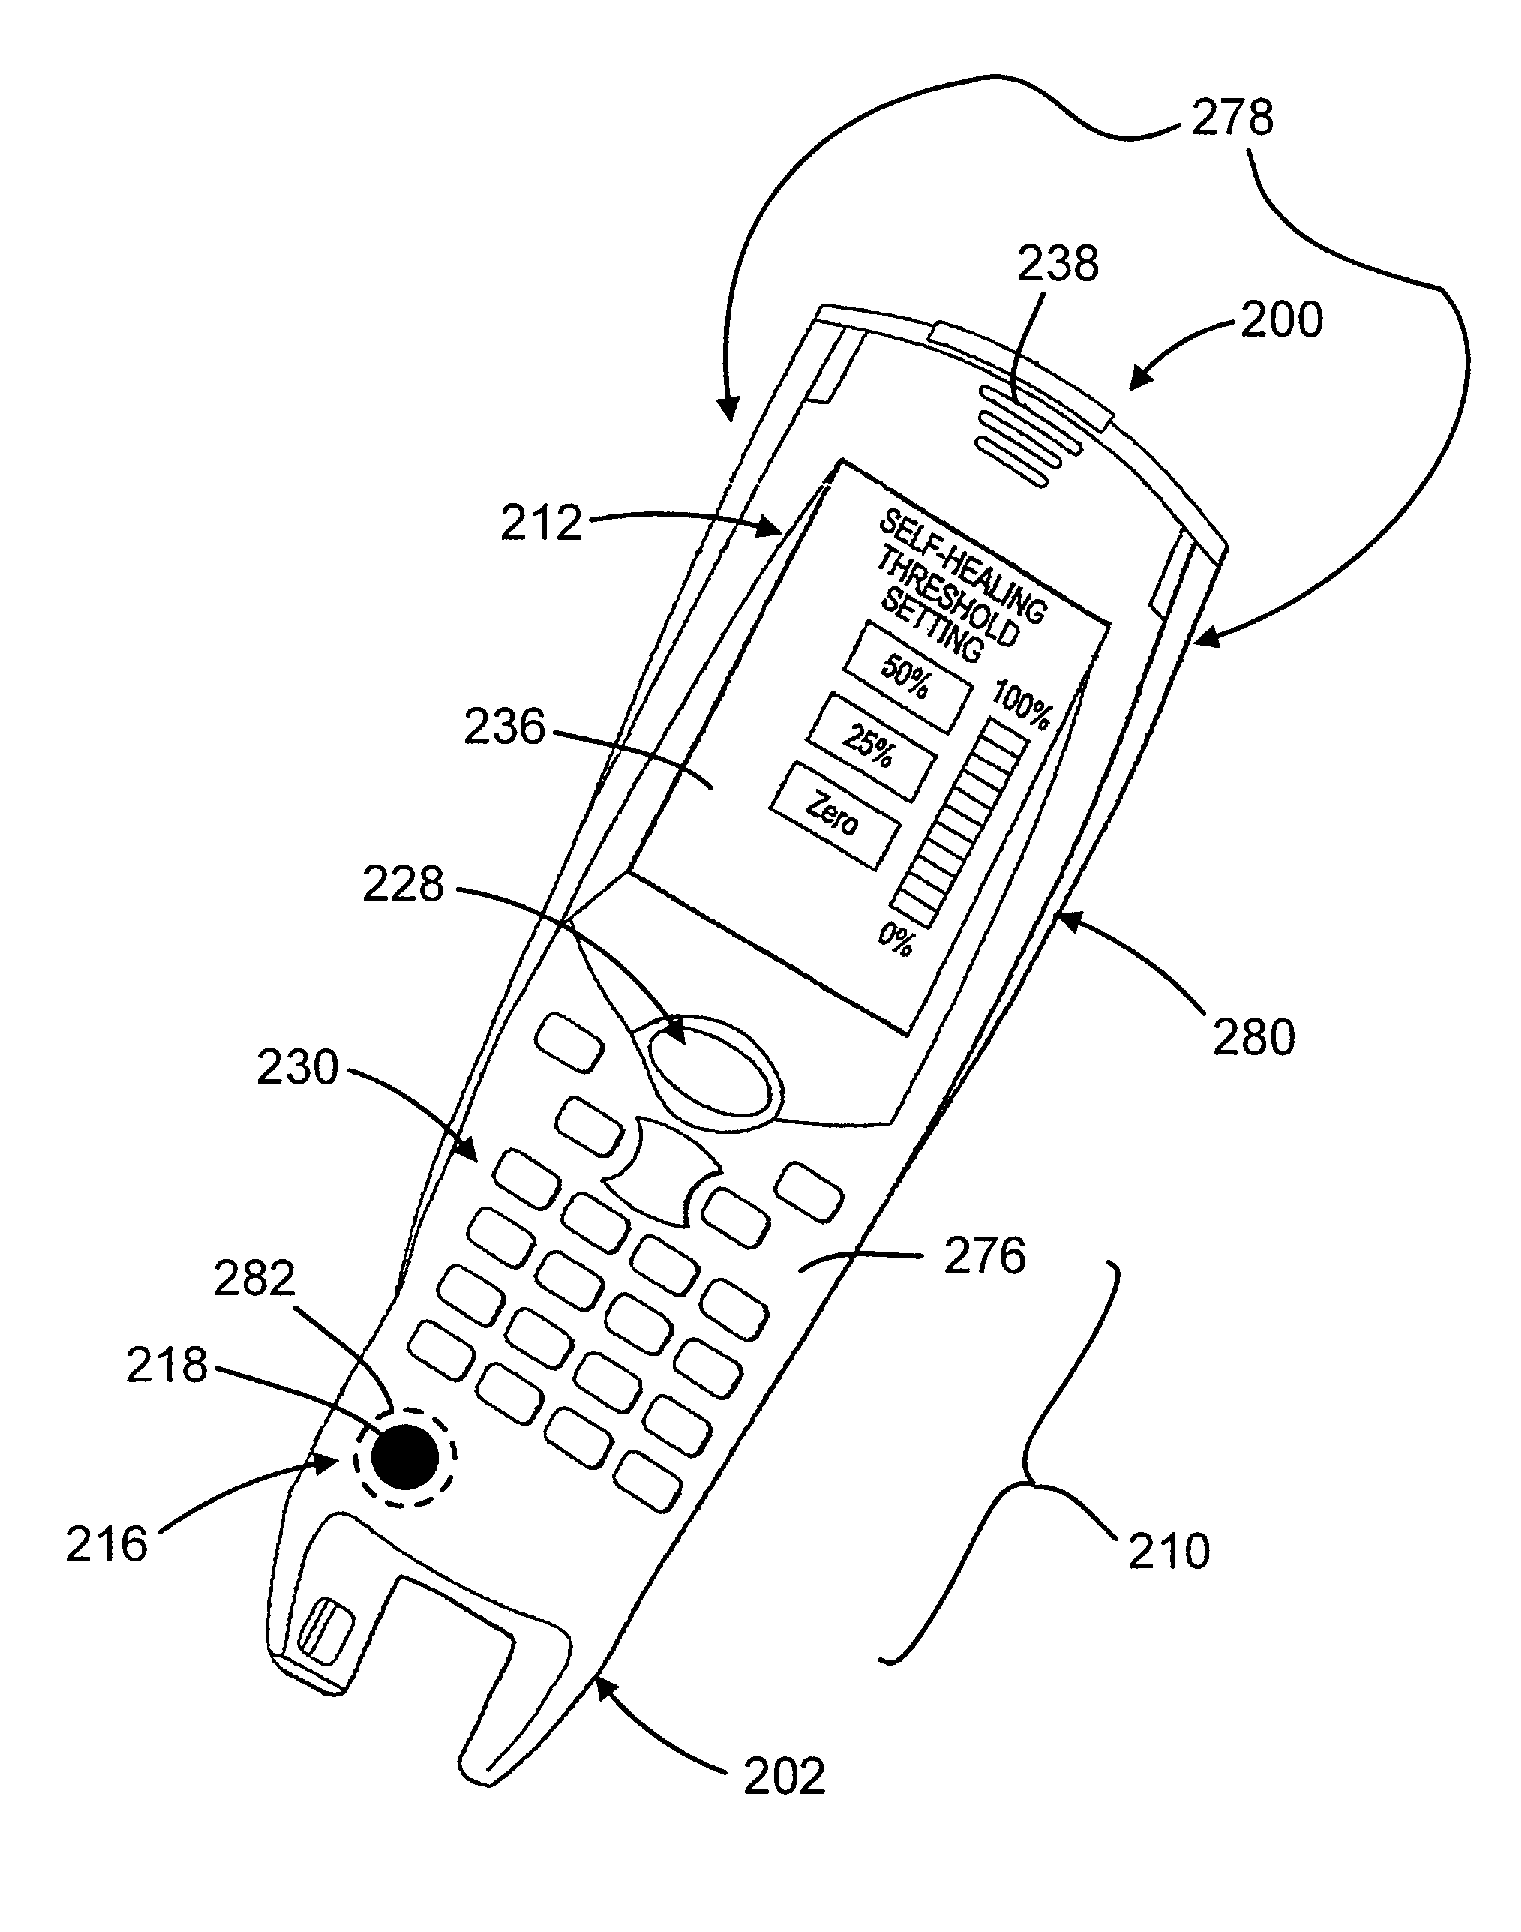 Portable data terminal